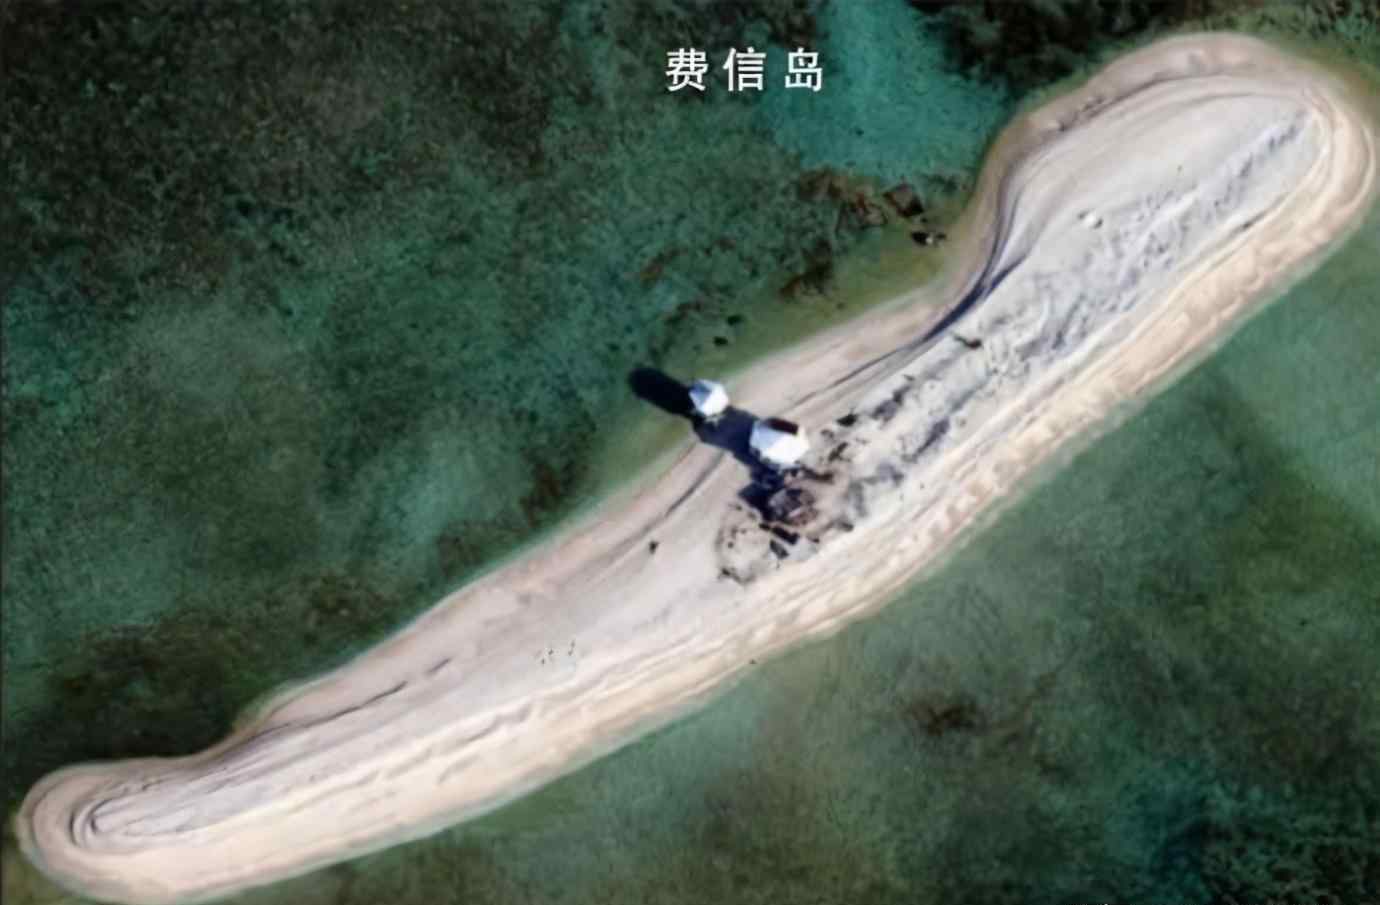 南沙群岛实际控制 中国实际控制南海多少岛礁？这个数字很有参考价值